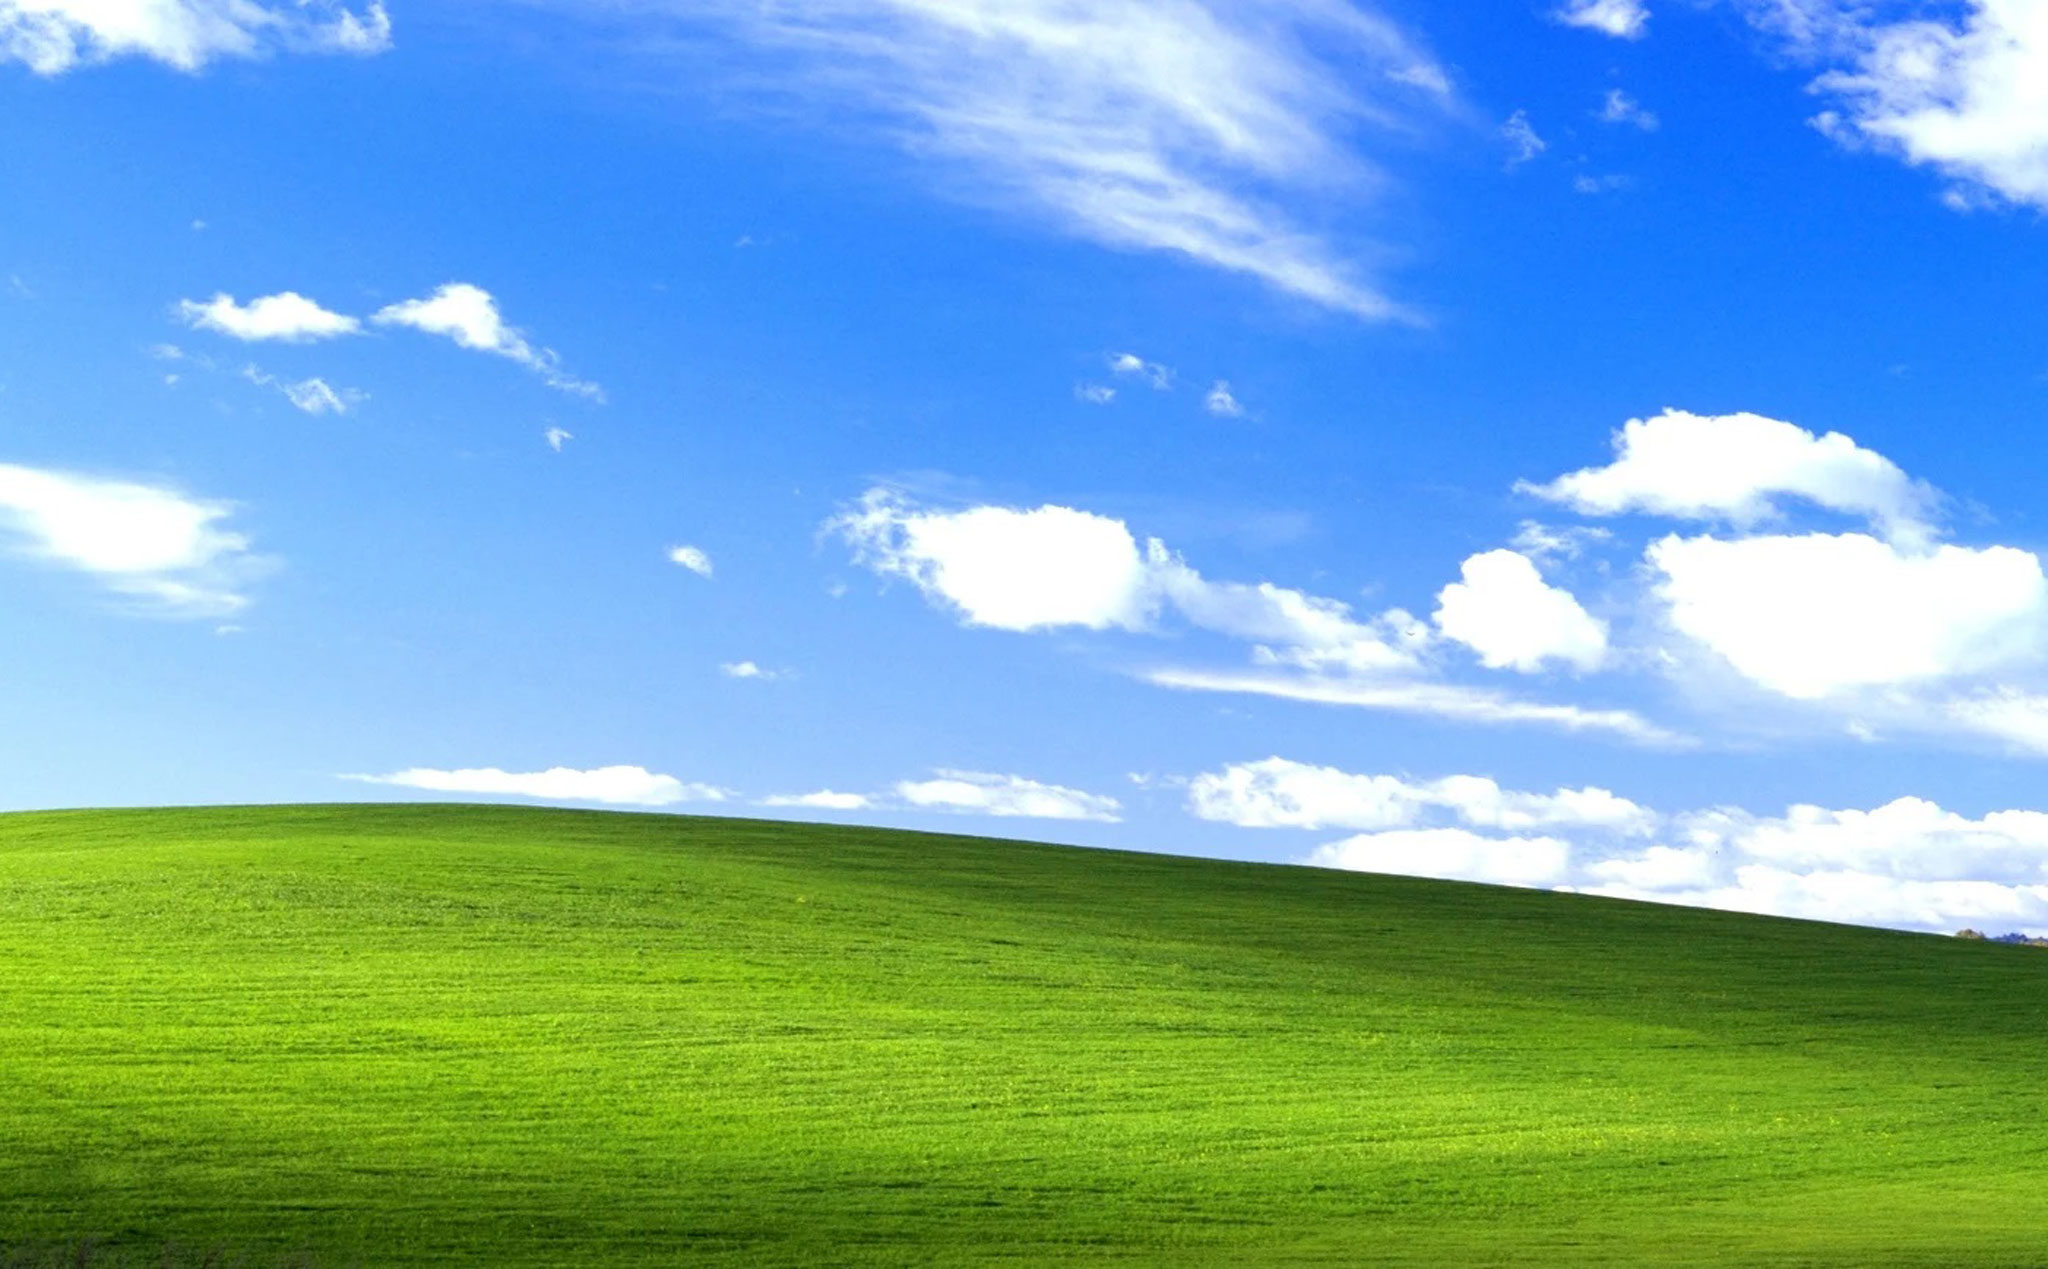 Windows XP là hệ điều hành cổ điển nhưng vẫn rất mượt mà và ổn định. Bạn đã từng dùng thử và bị cuốn hút bởi nó chưa? Hãy xem ảnh liên quan đến Windows XP để đưa bạn trở lại thập niên 2000 thật xảy.